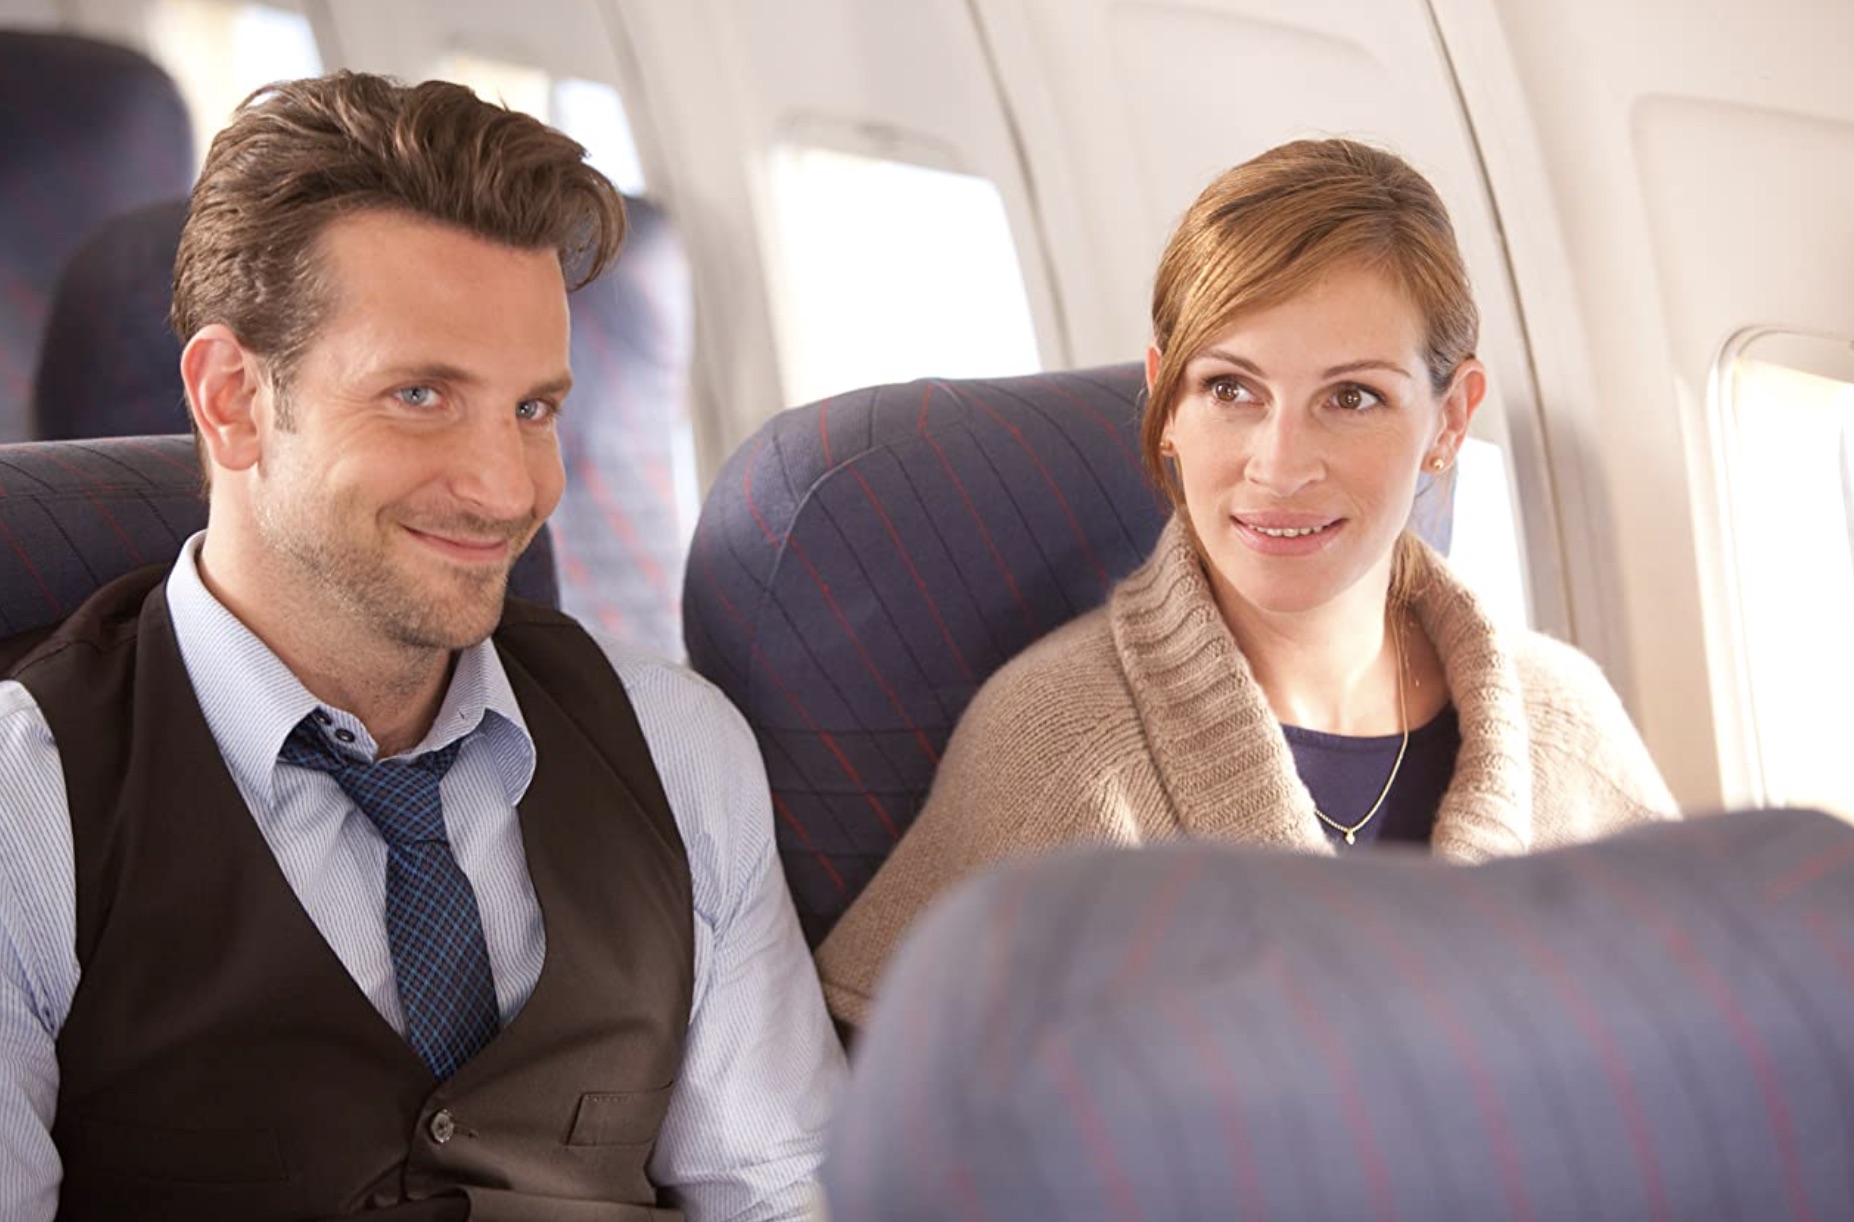 Duas pessoas sentam-se lado a lado em um avião.